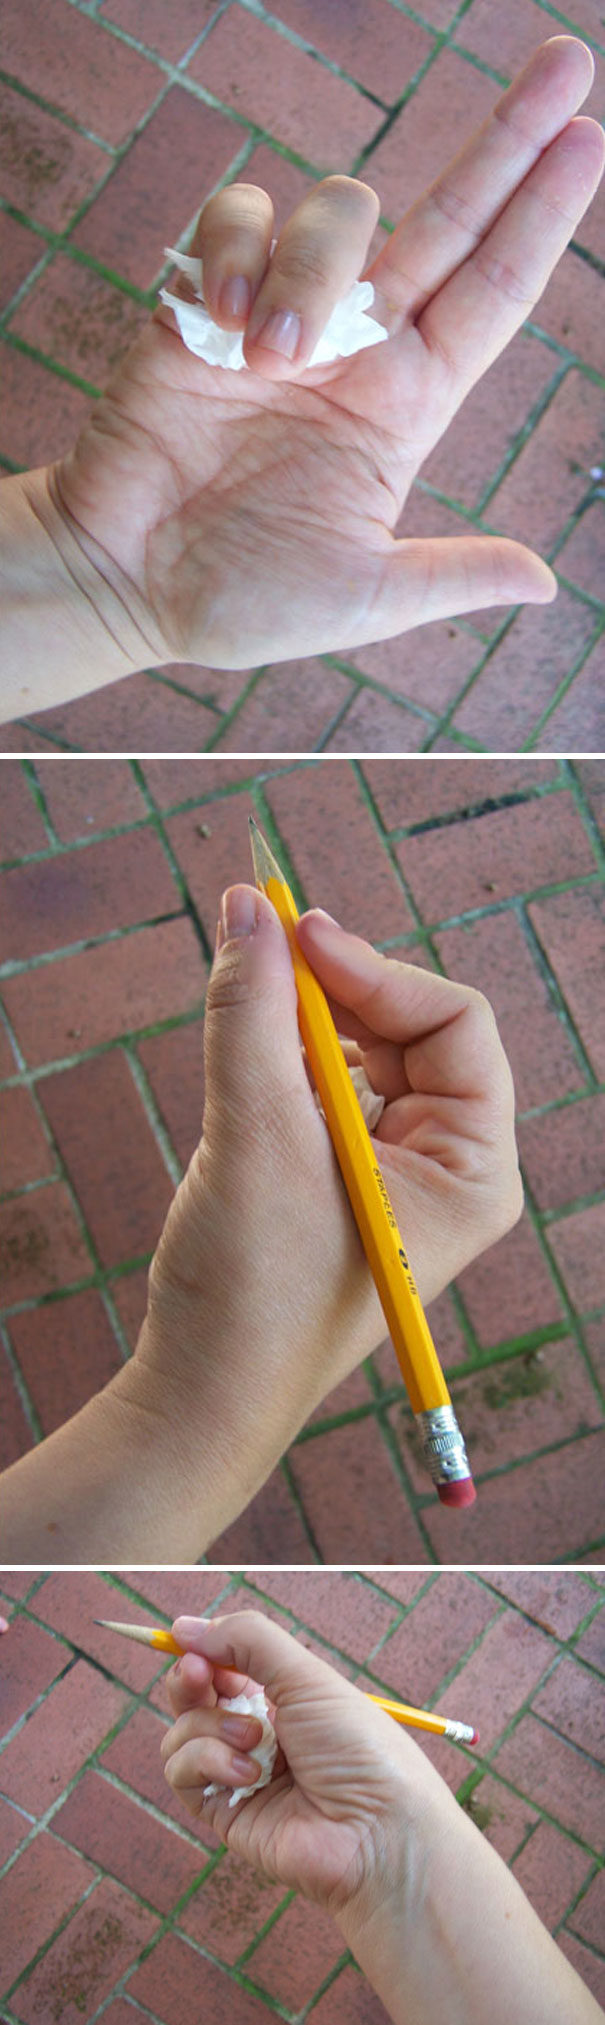 ให้เด็กฝึกจับดินสอ